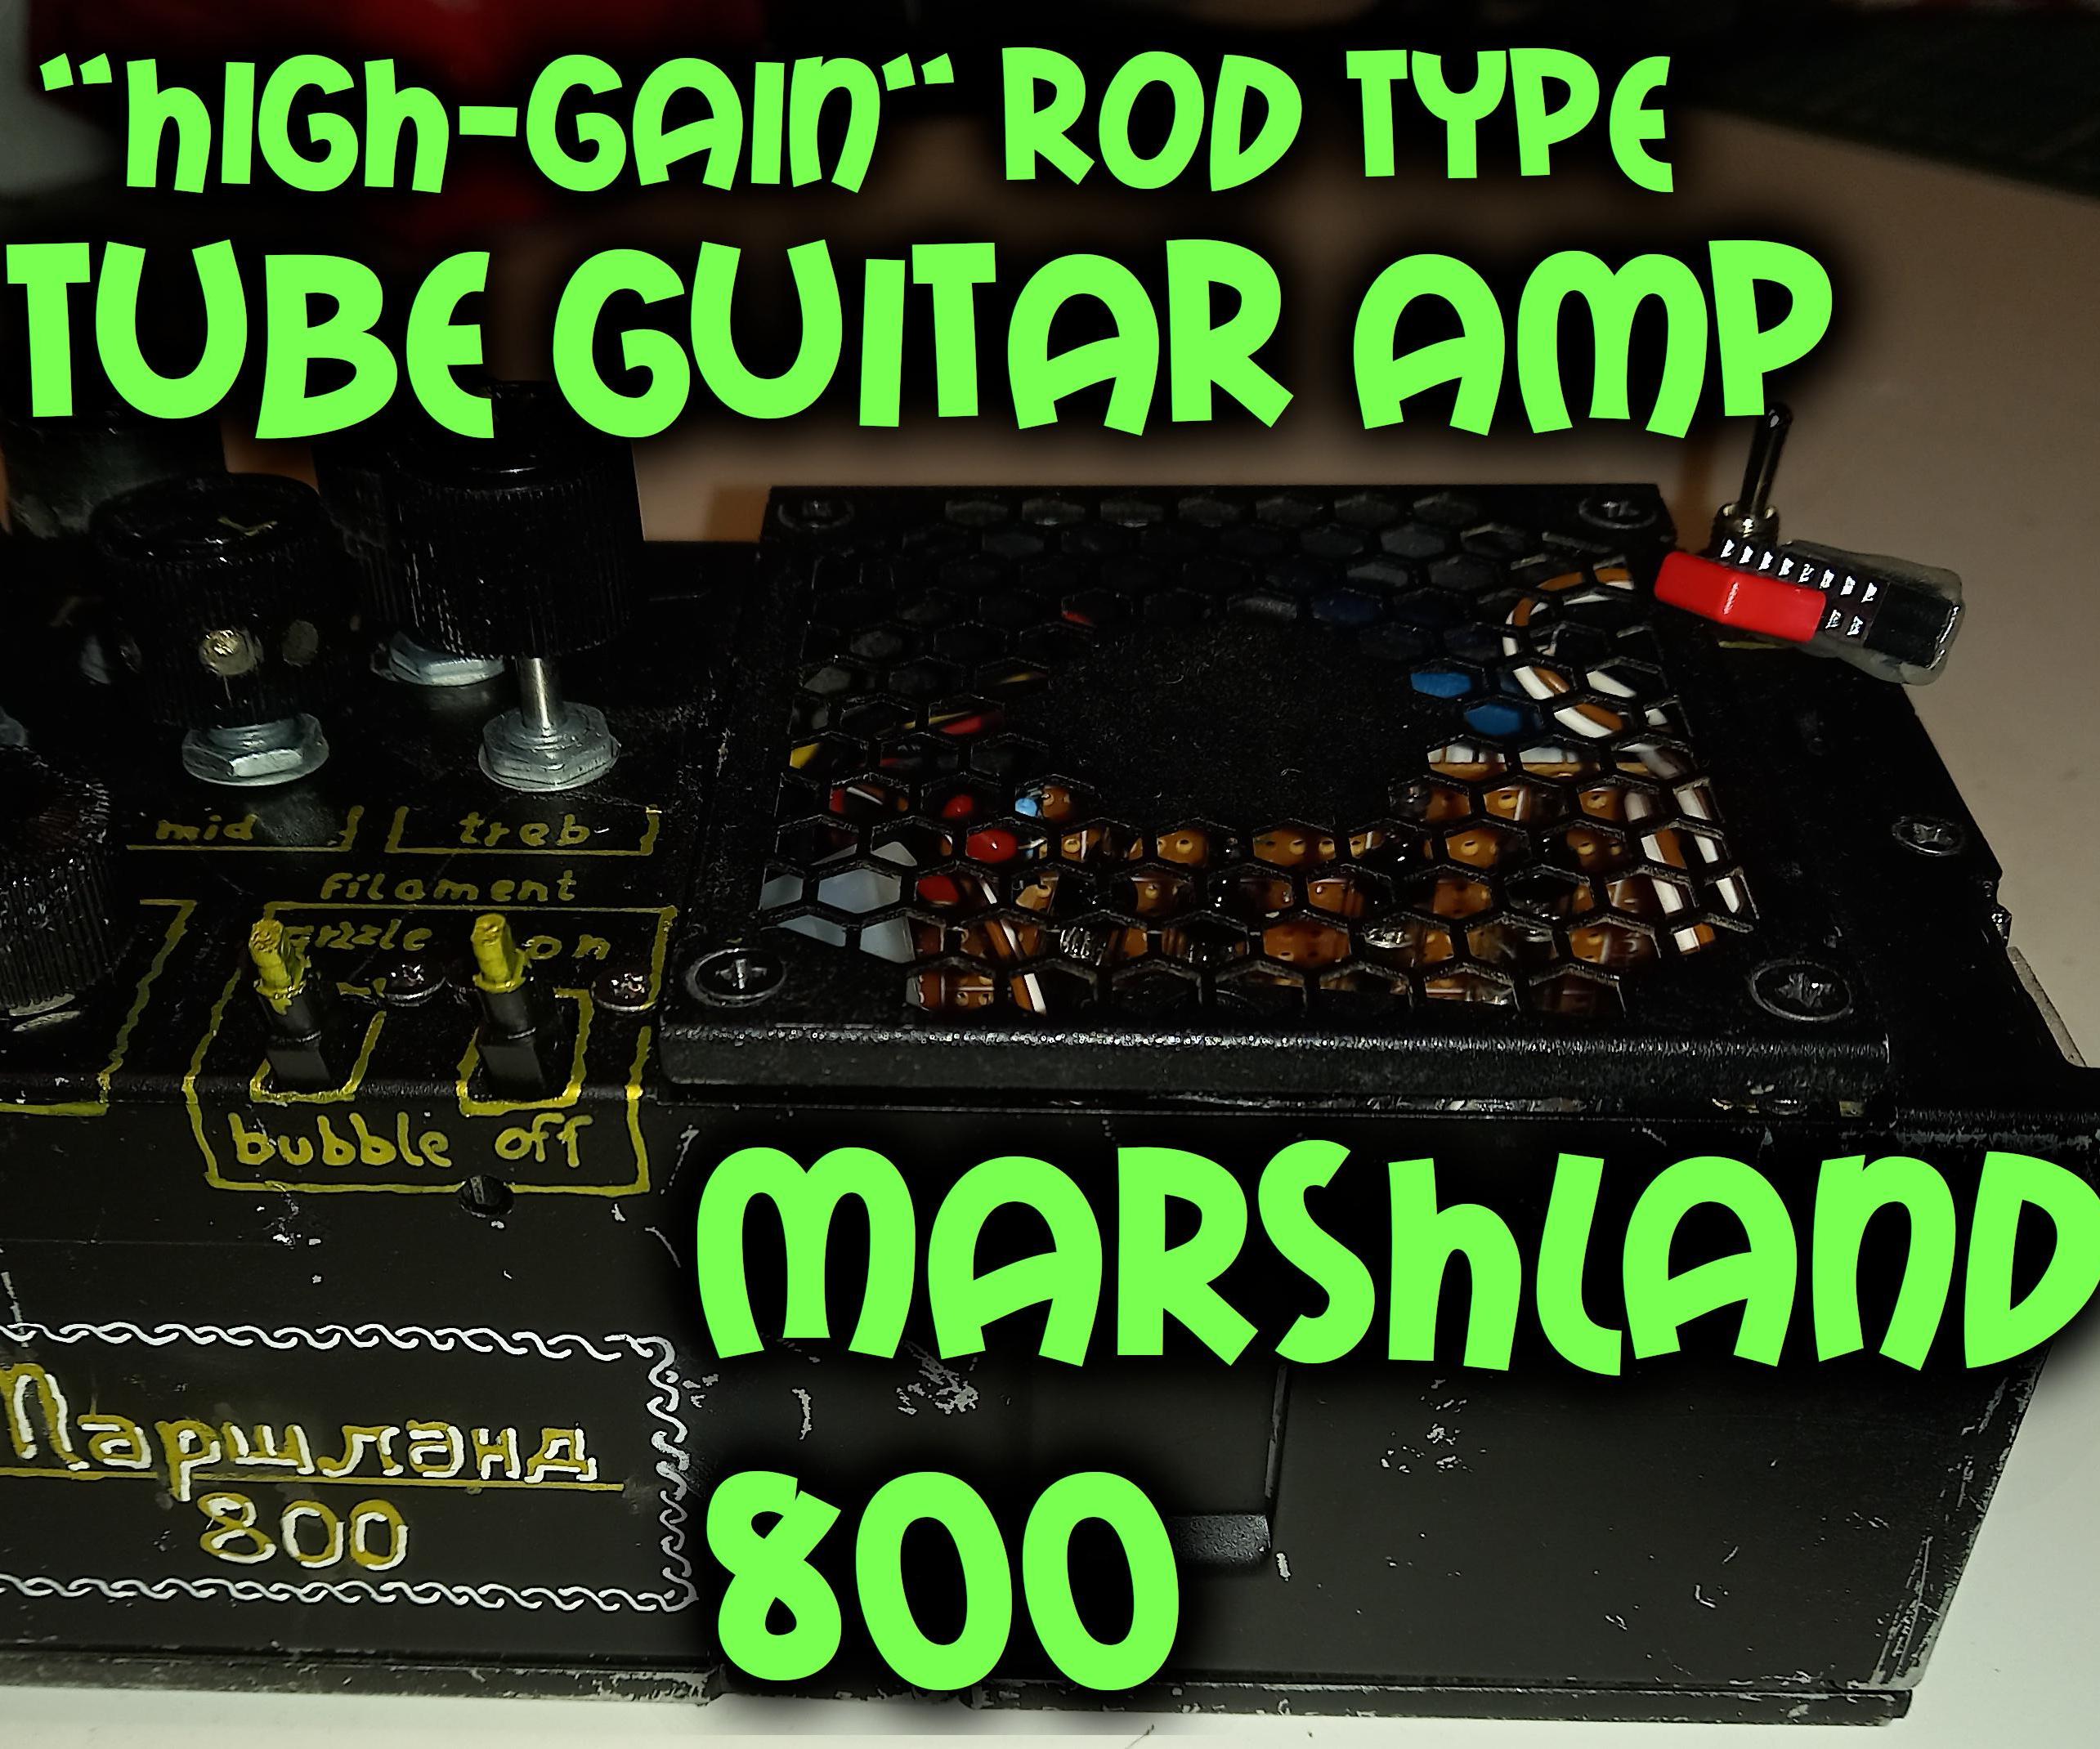 Rod Type Tube Guitar Pre-Amplifier: Marshland 800